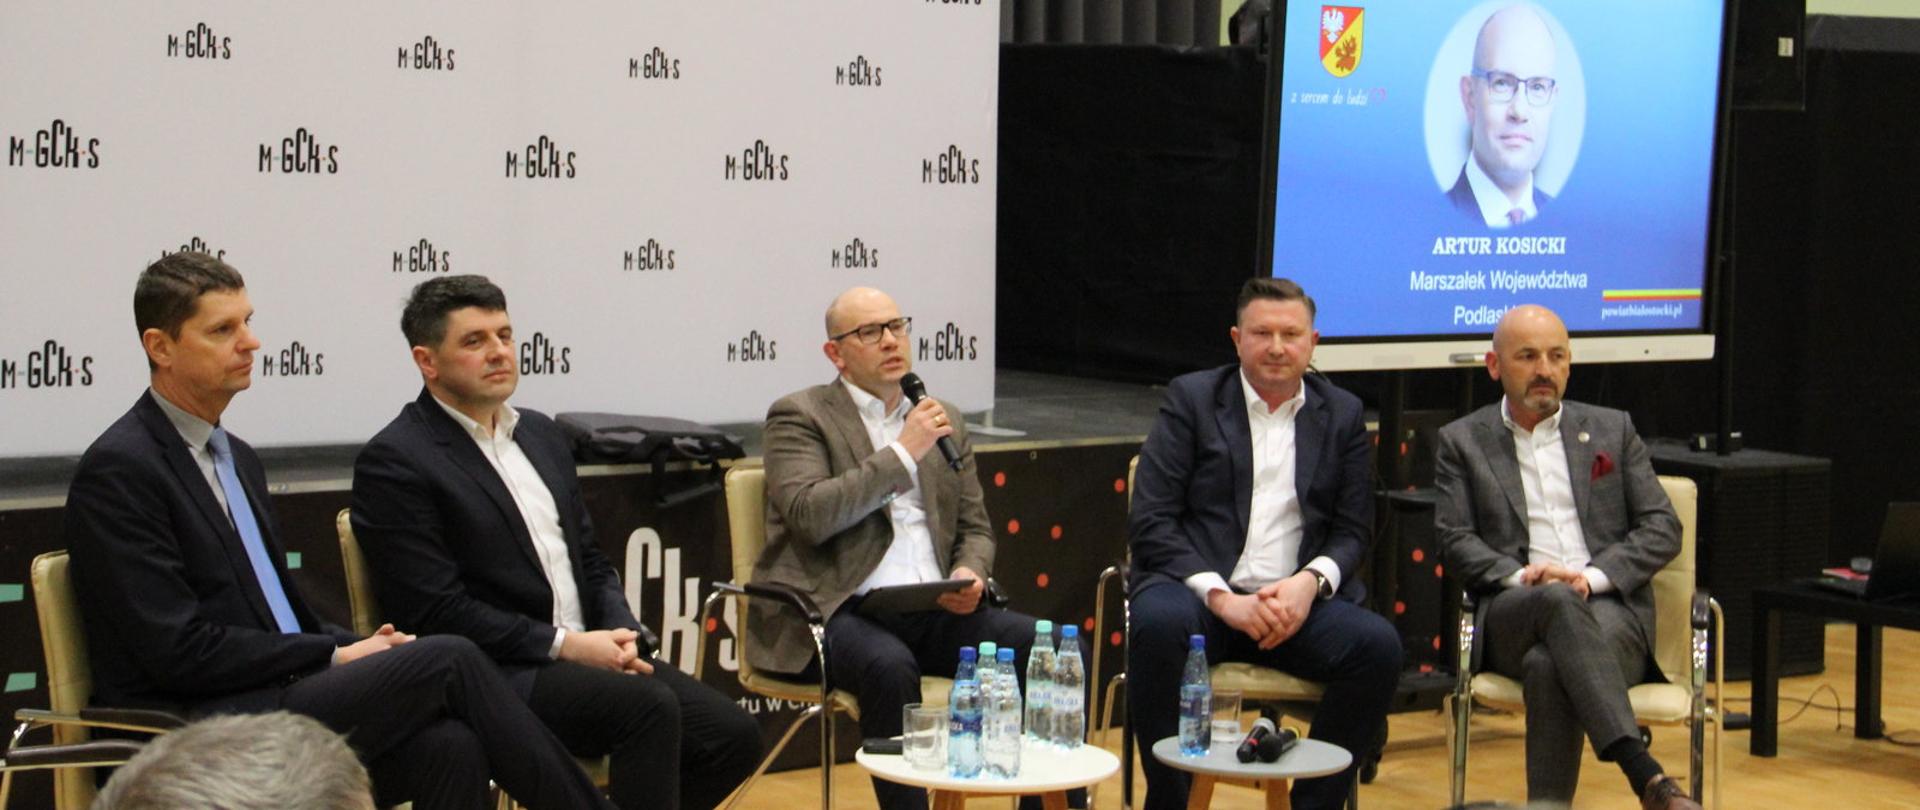 Spotkanie w Choroszczy panel ekspertów